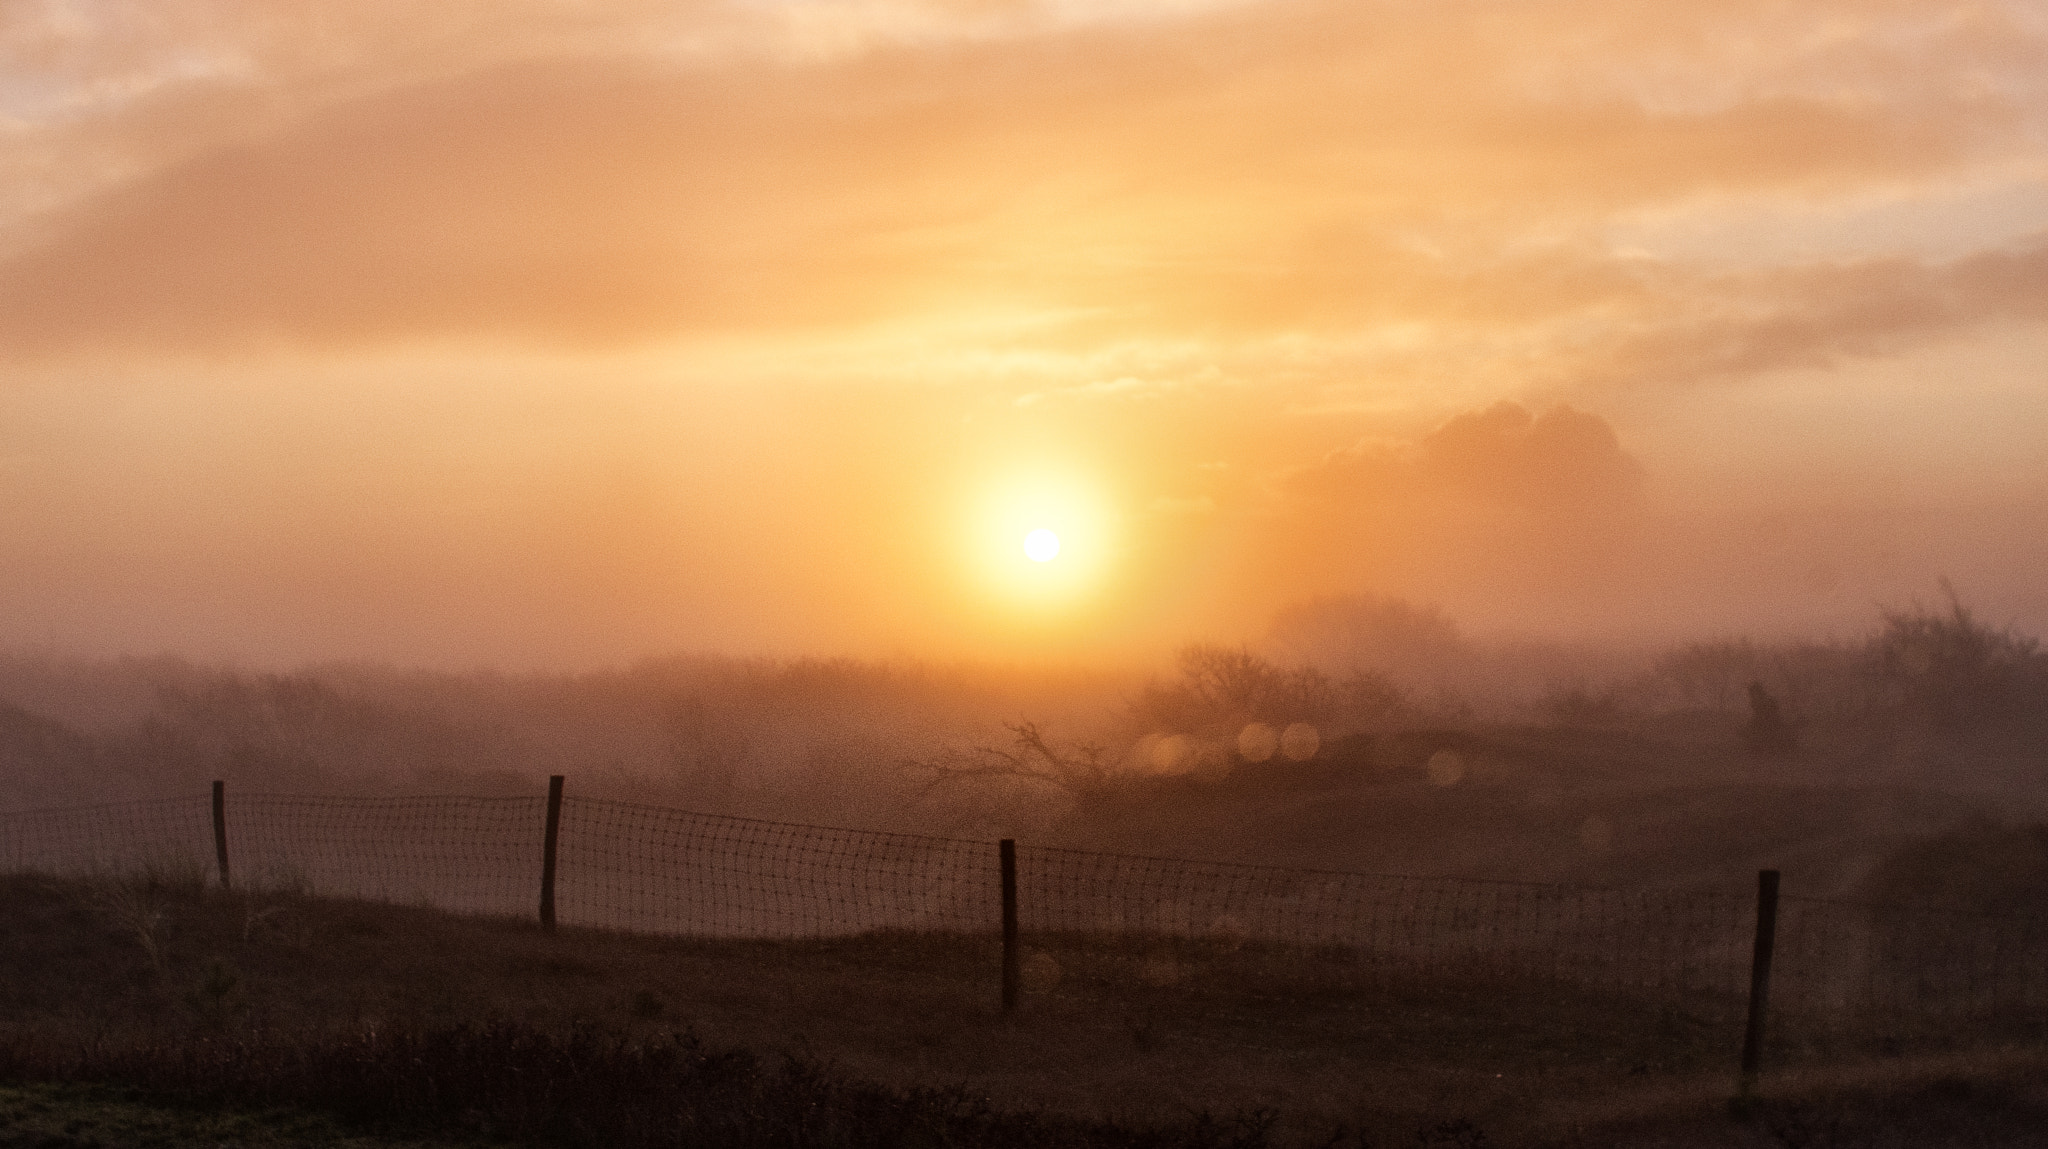 Pentax K-5 sample photo. Misty morning field photography